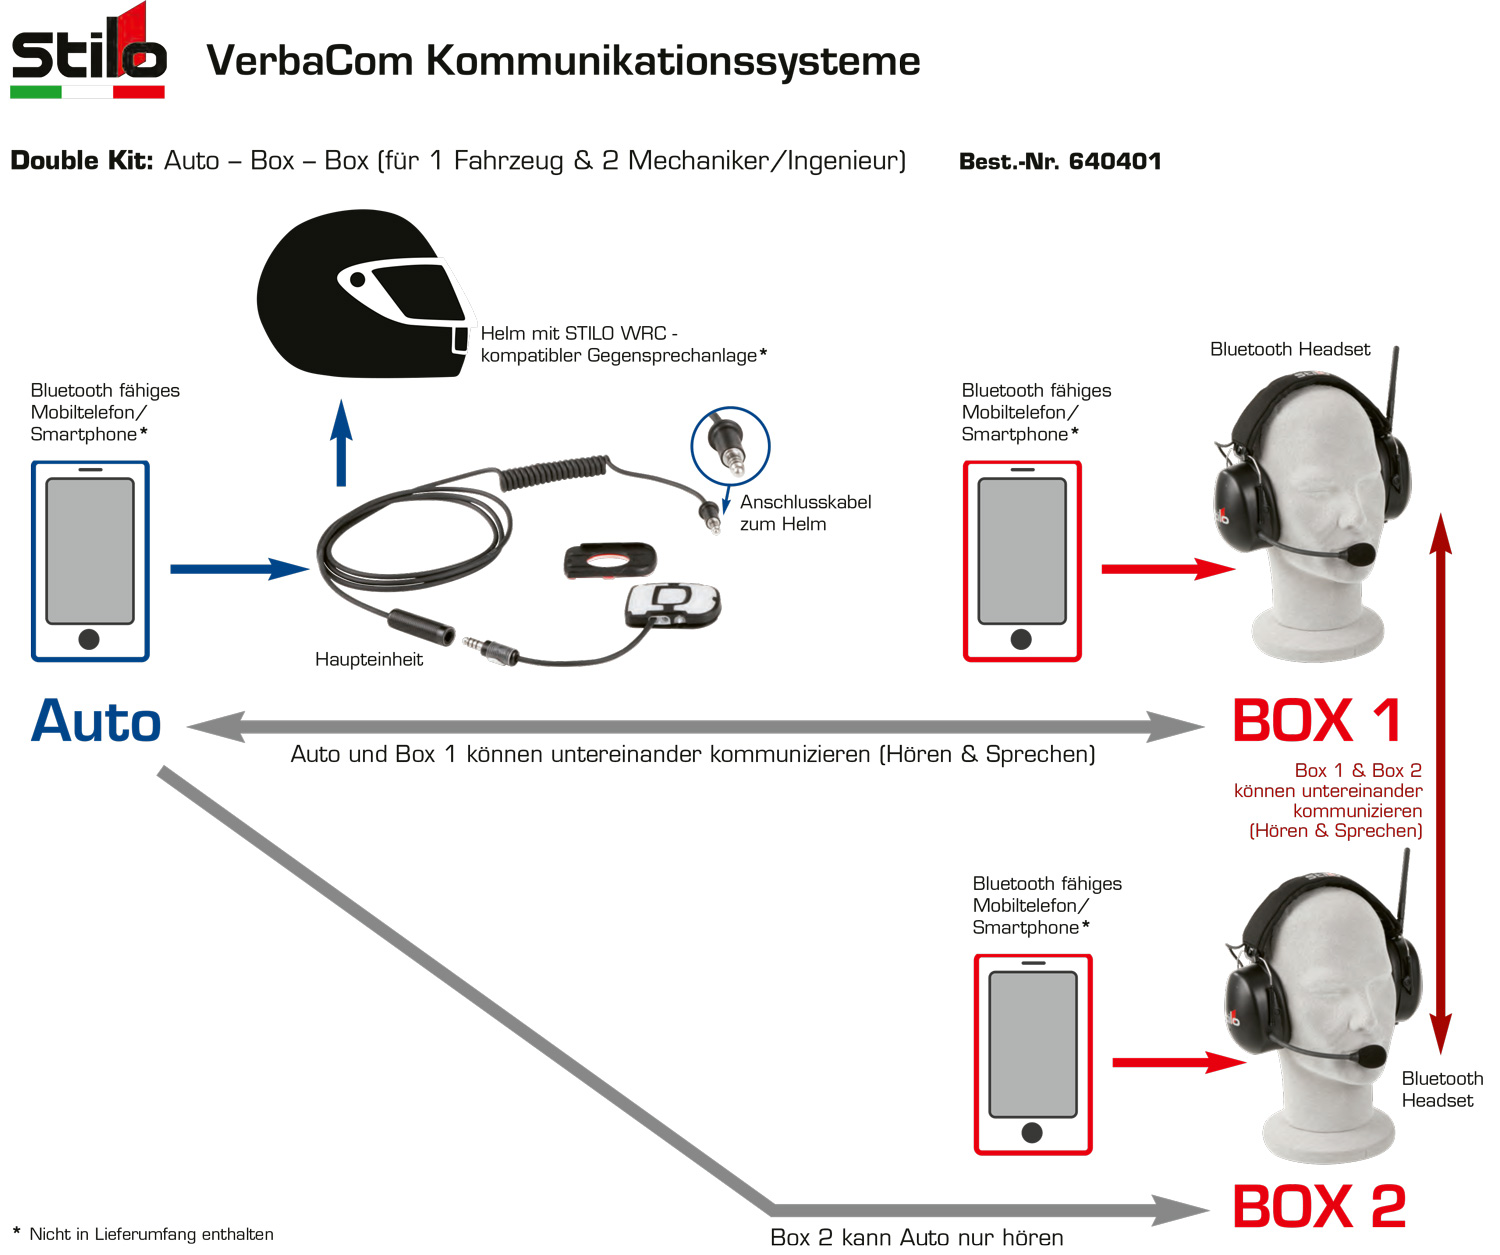 Stilo Kommunikationssystem VerbaCom